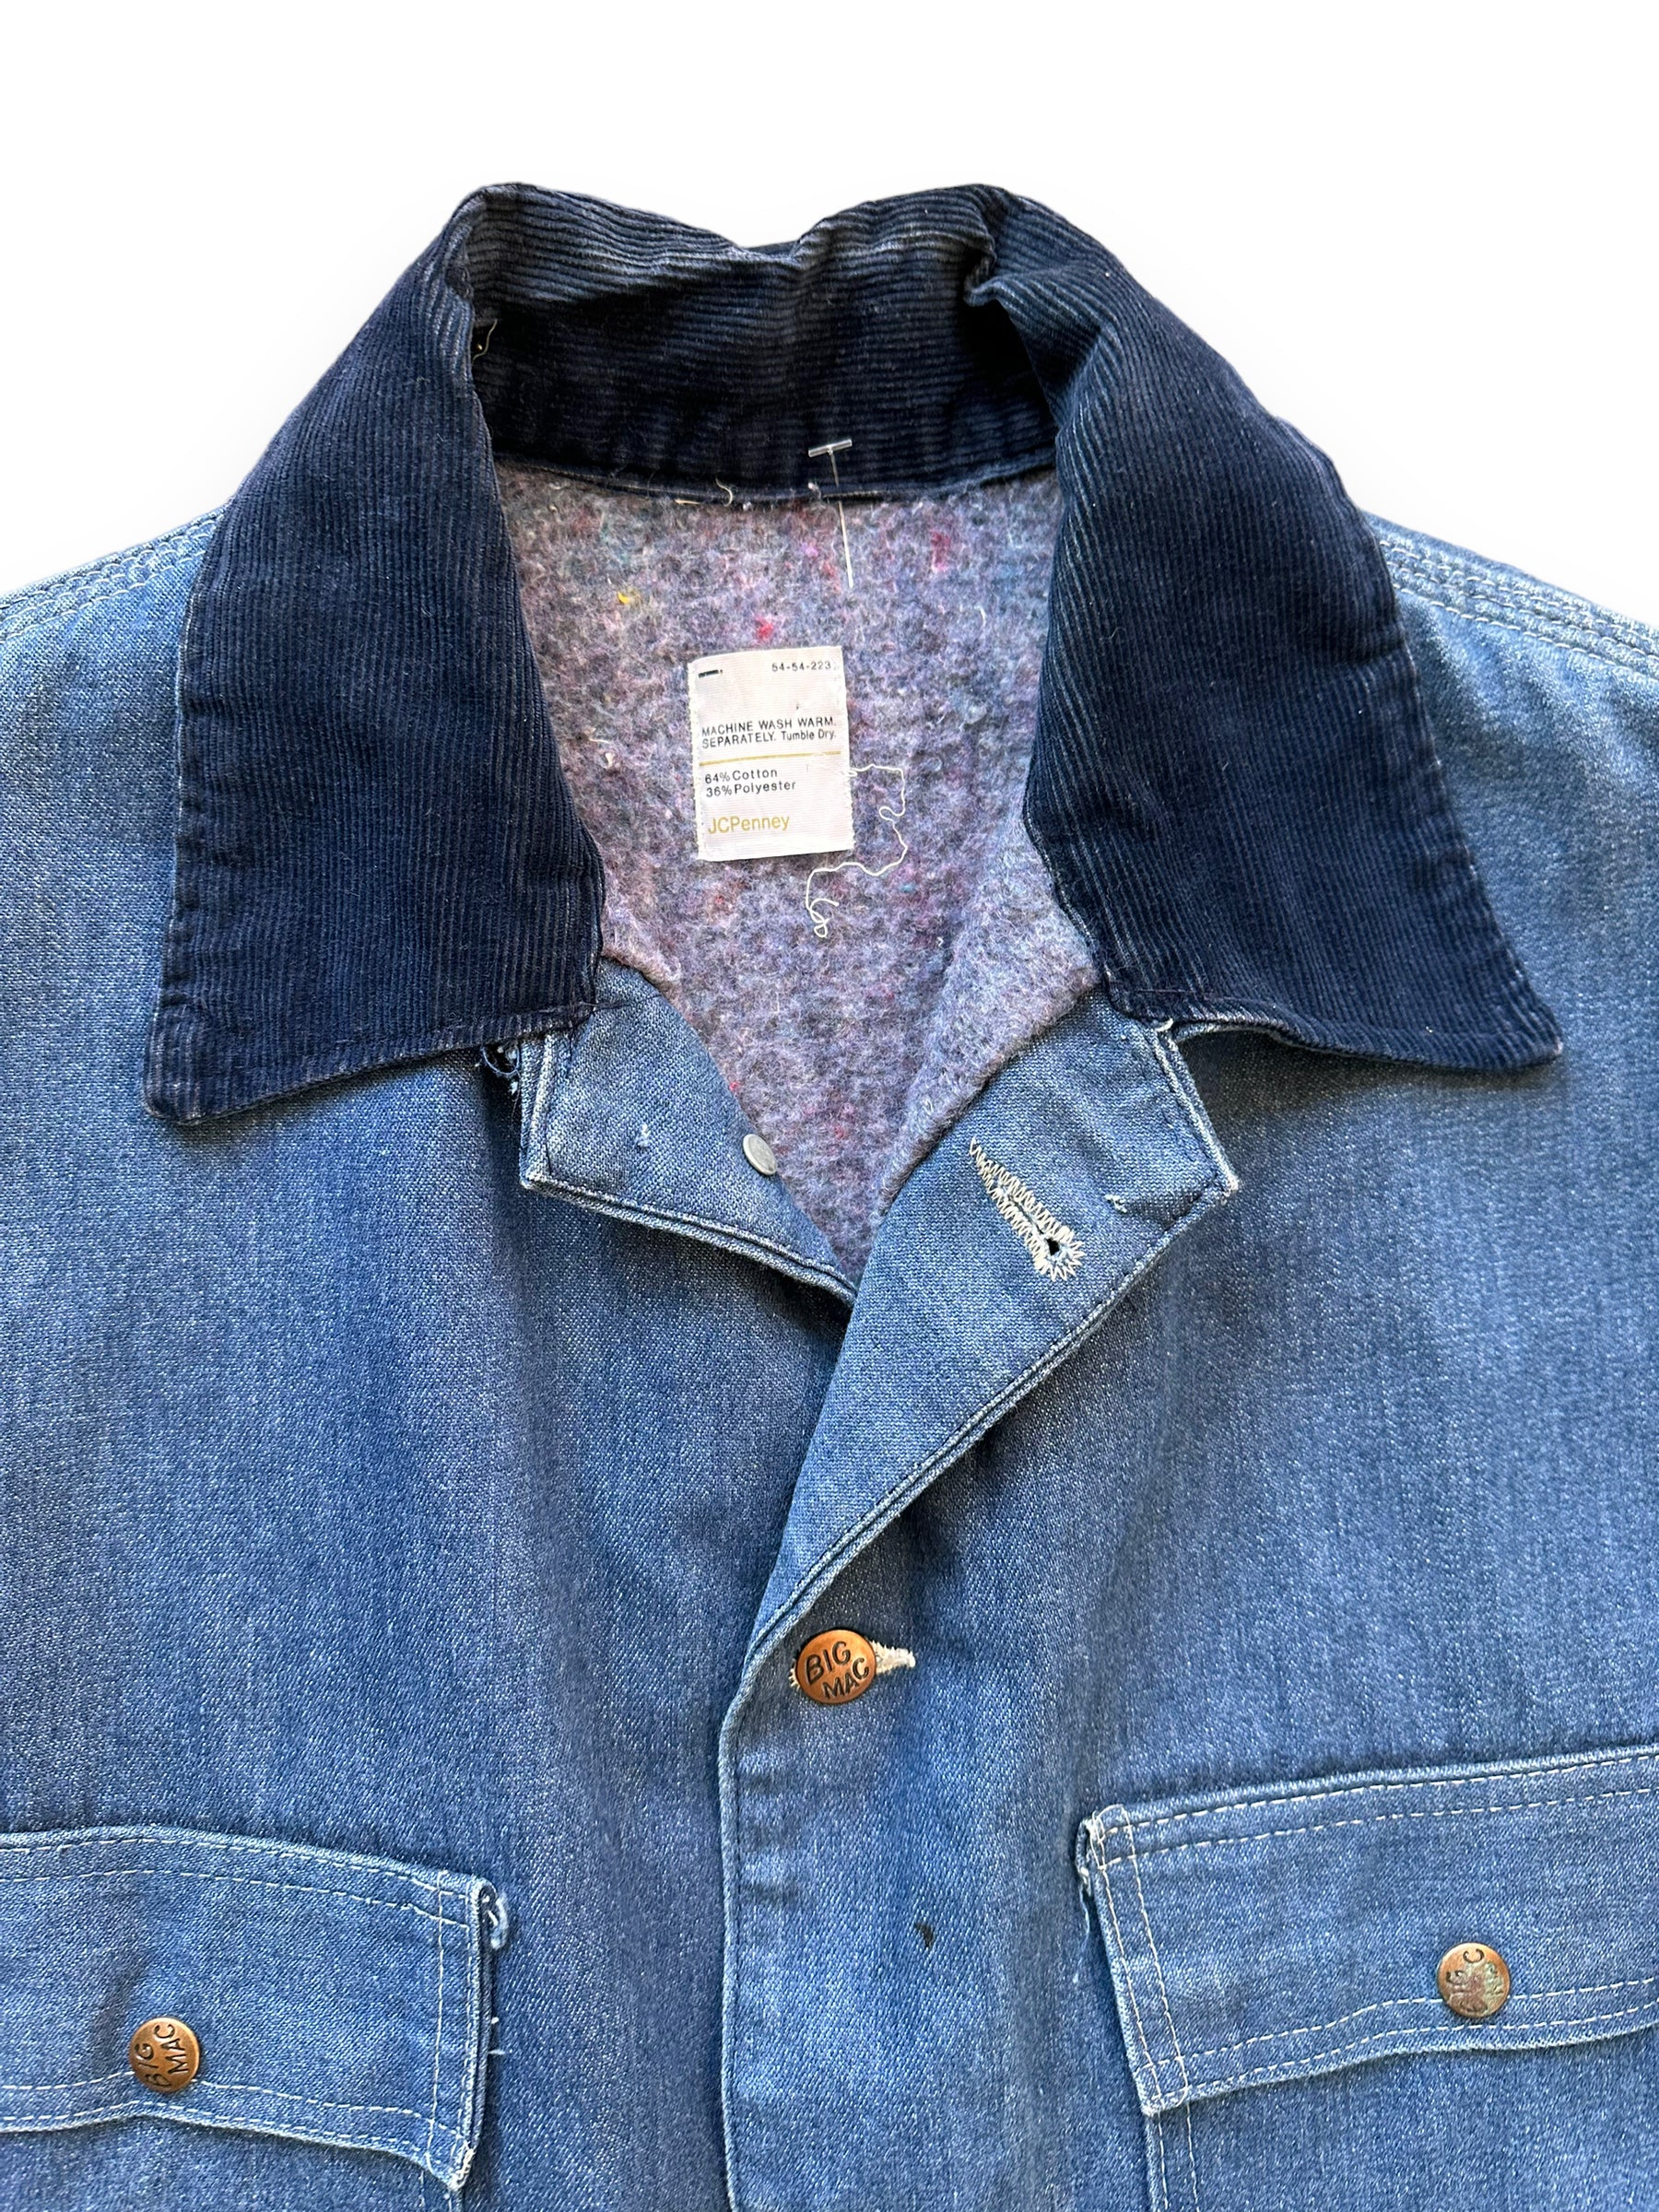 The Barn Owl Vintage Pleated Denim Jacket